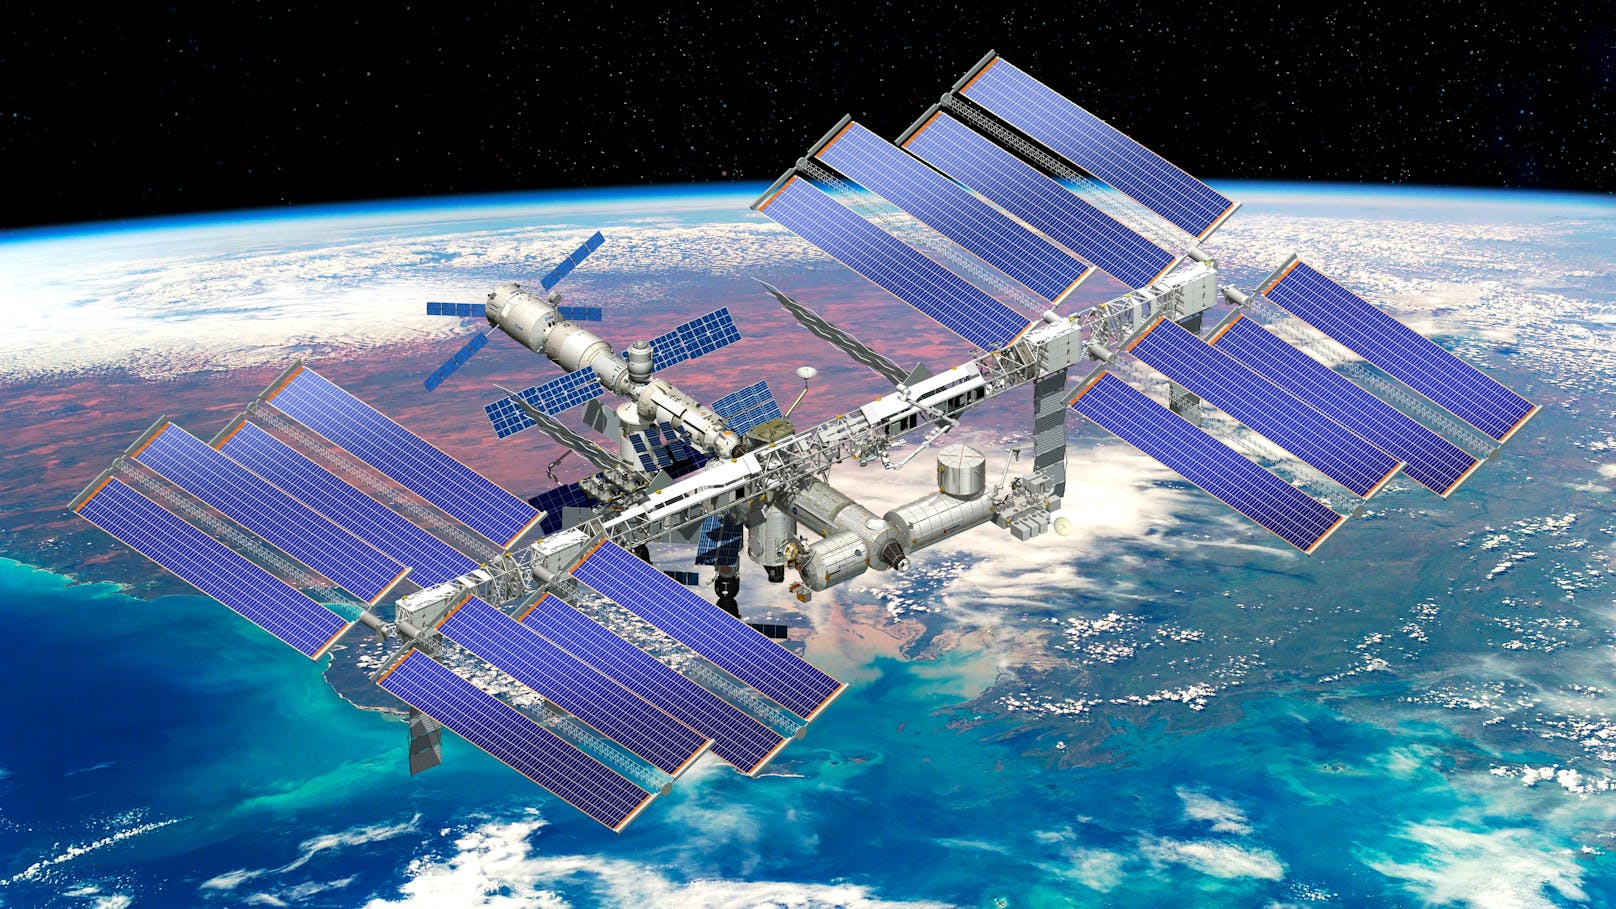 NASA-Astronauten docken mit "Starliner" an ISS an